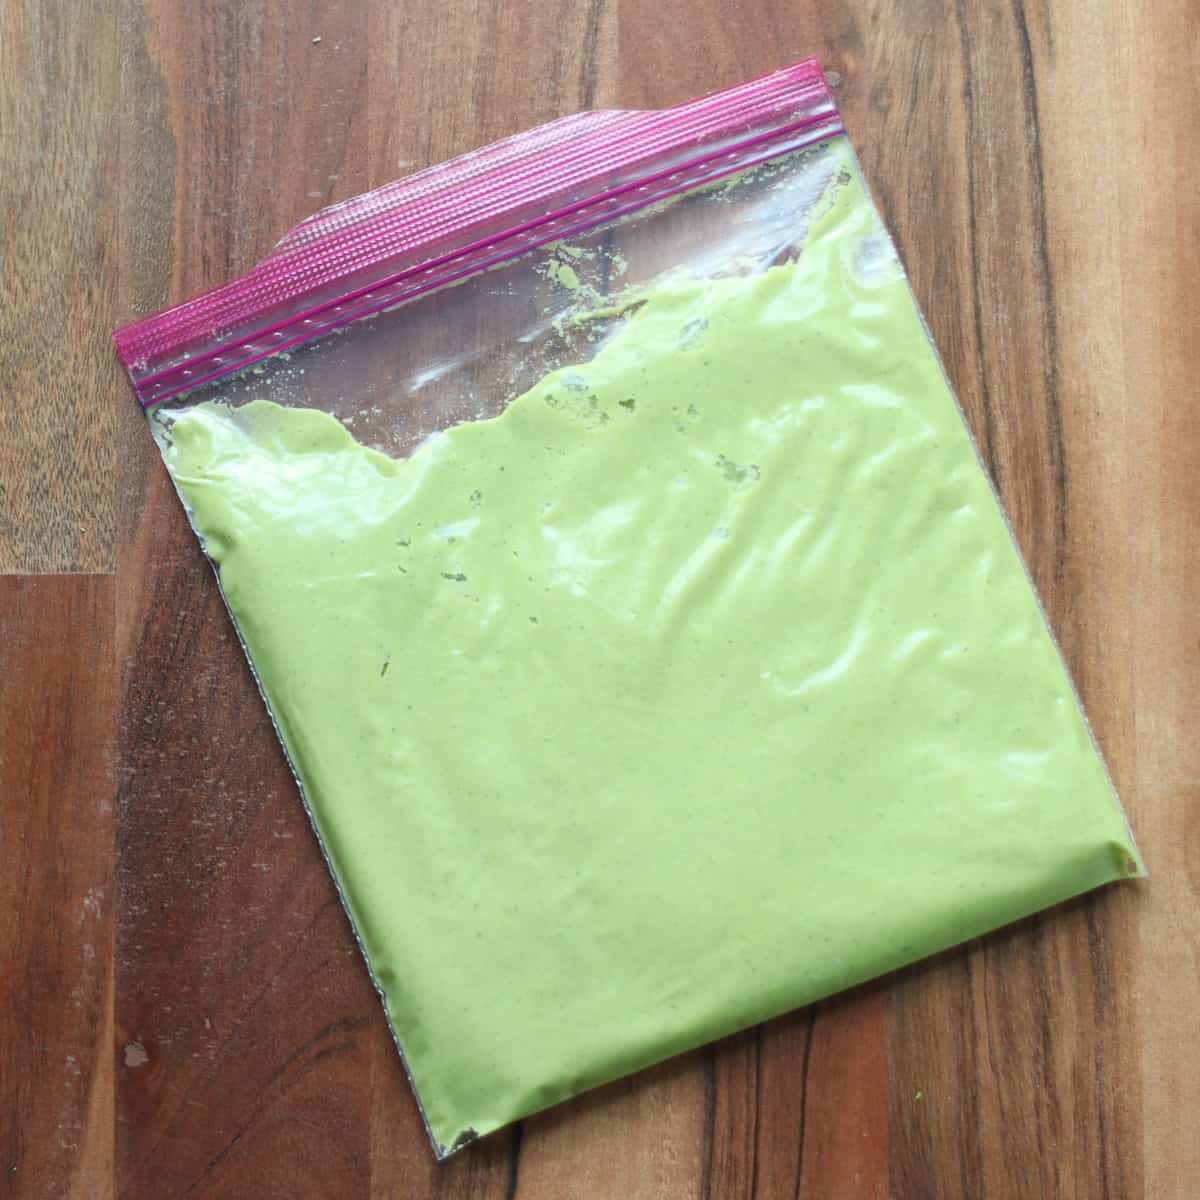 Leftover pesto in a freezer-safe bag.